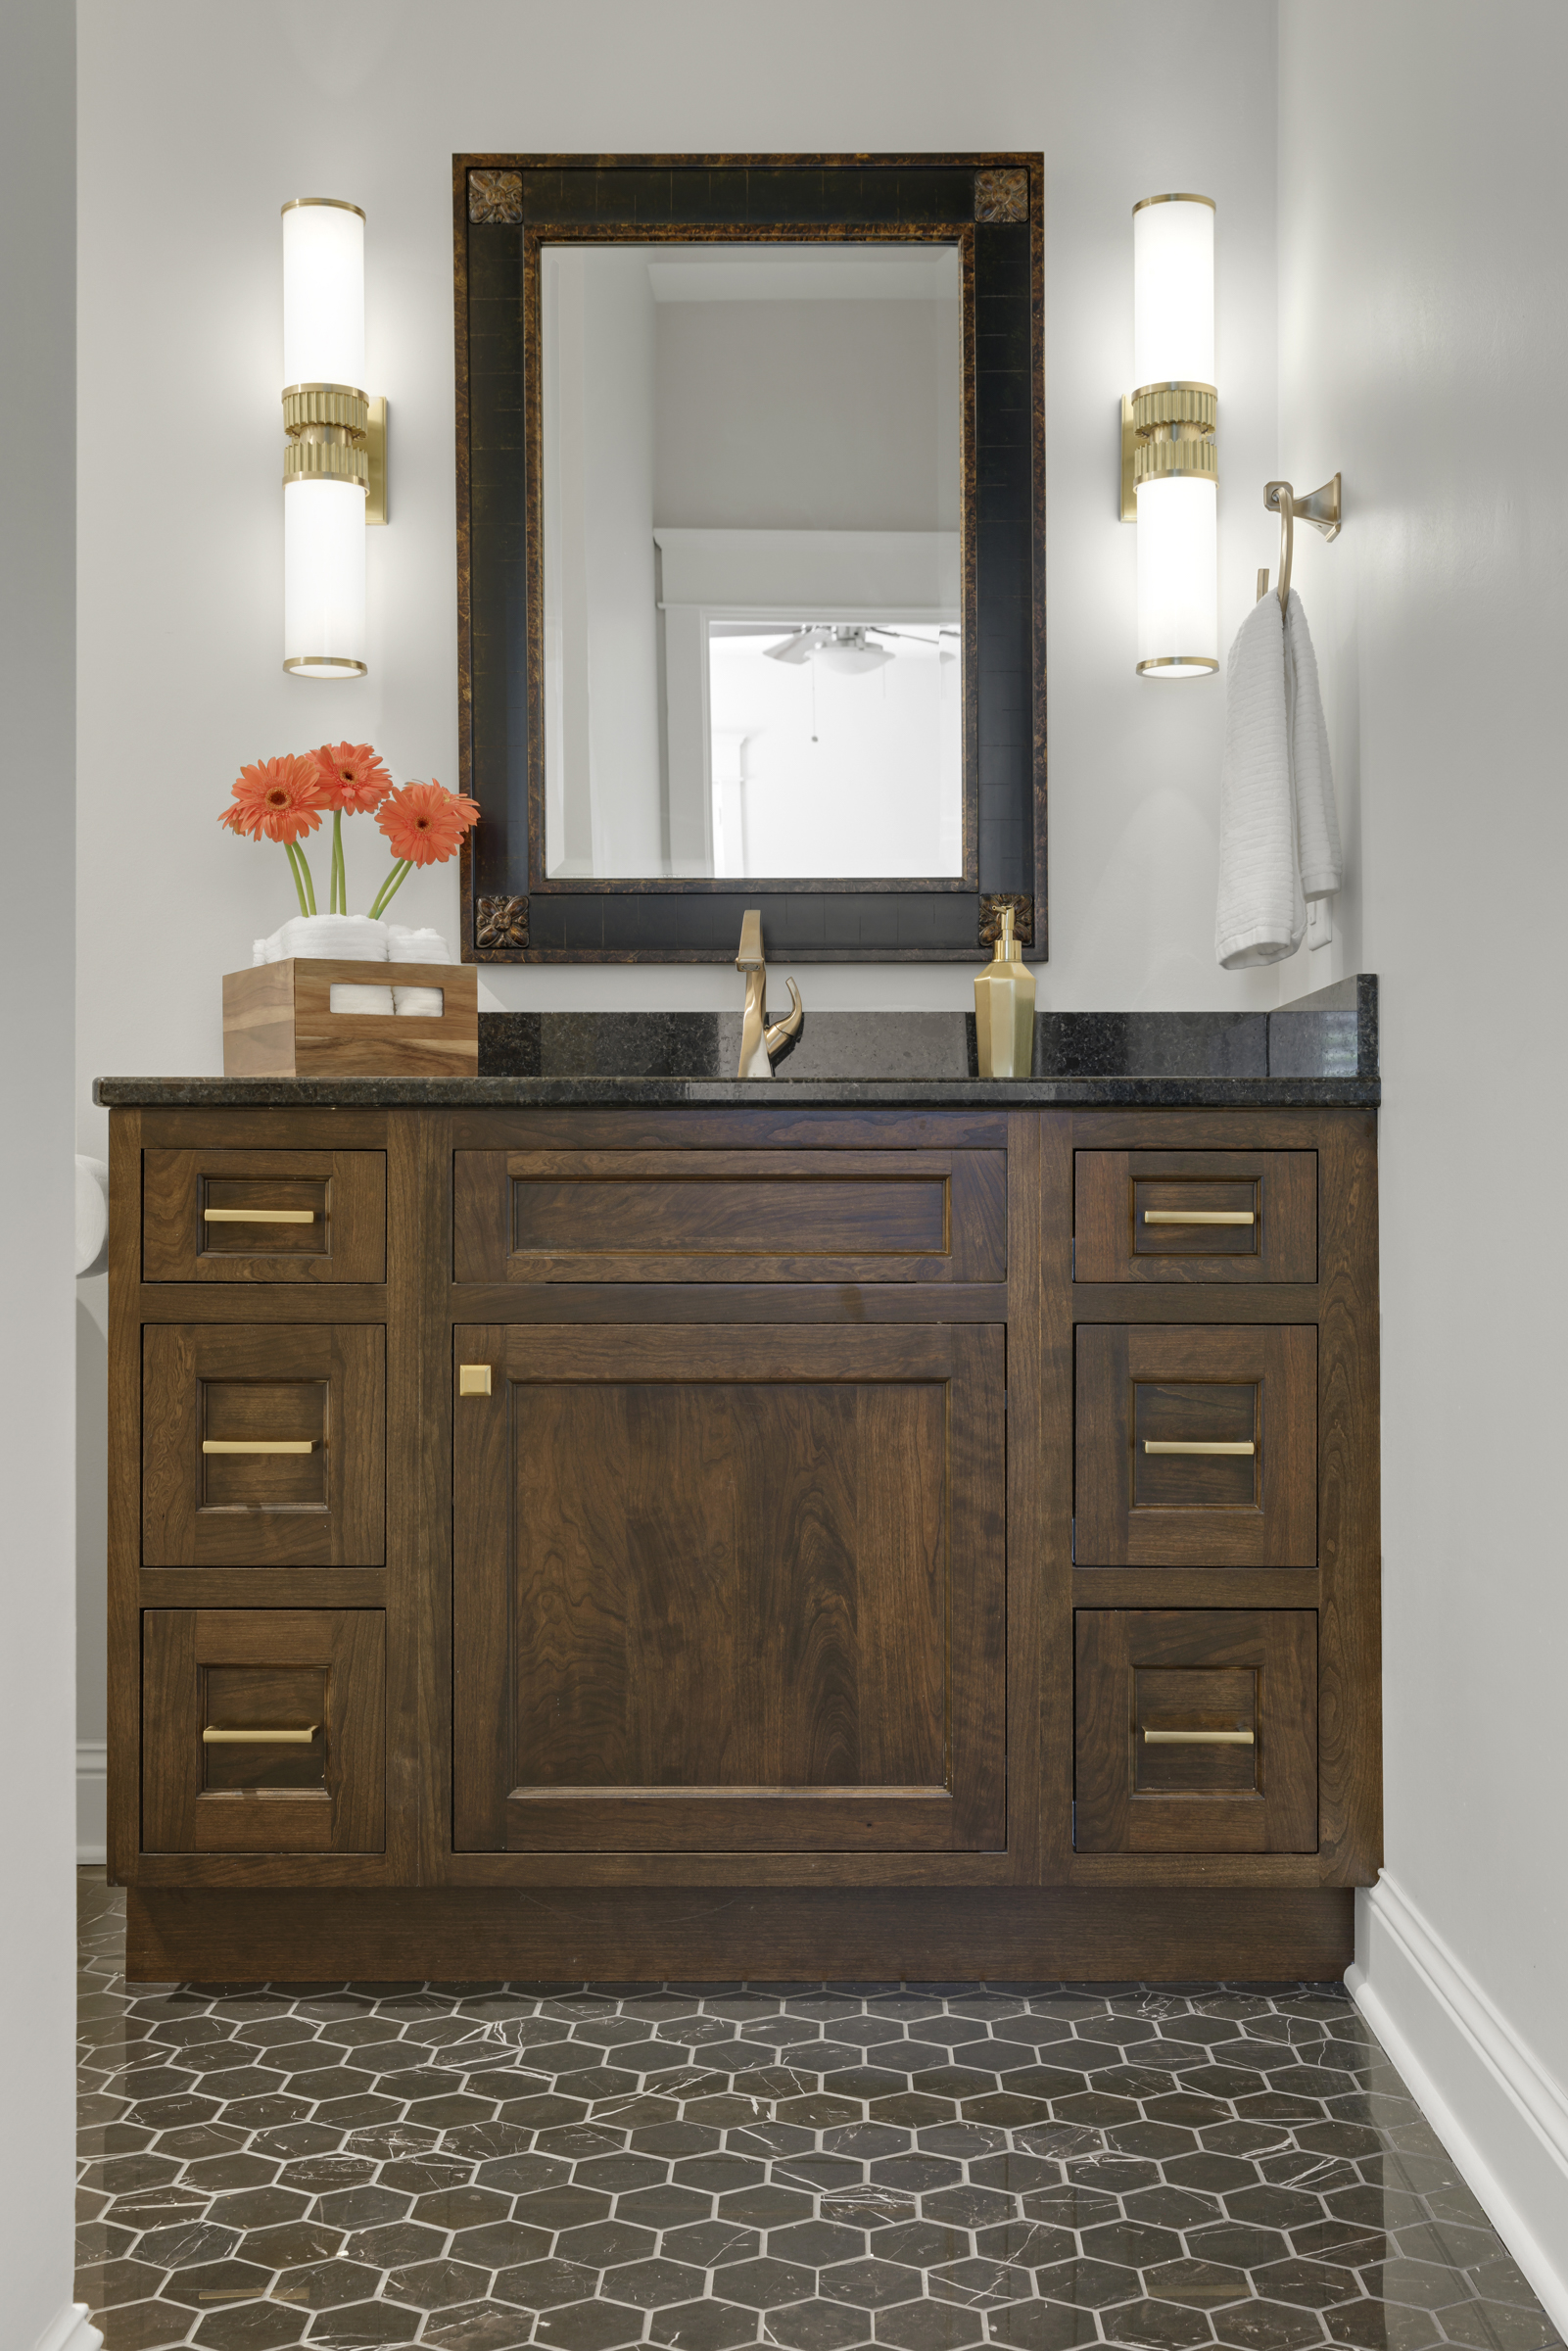 Guest Bathroom remodel with dark hexagon floor tile, wooden vanity, and gold fixtures